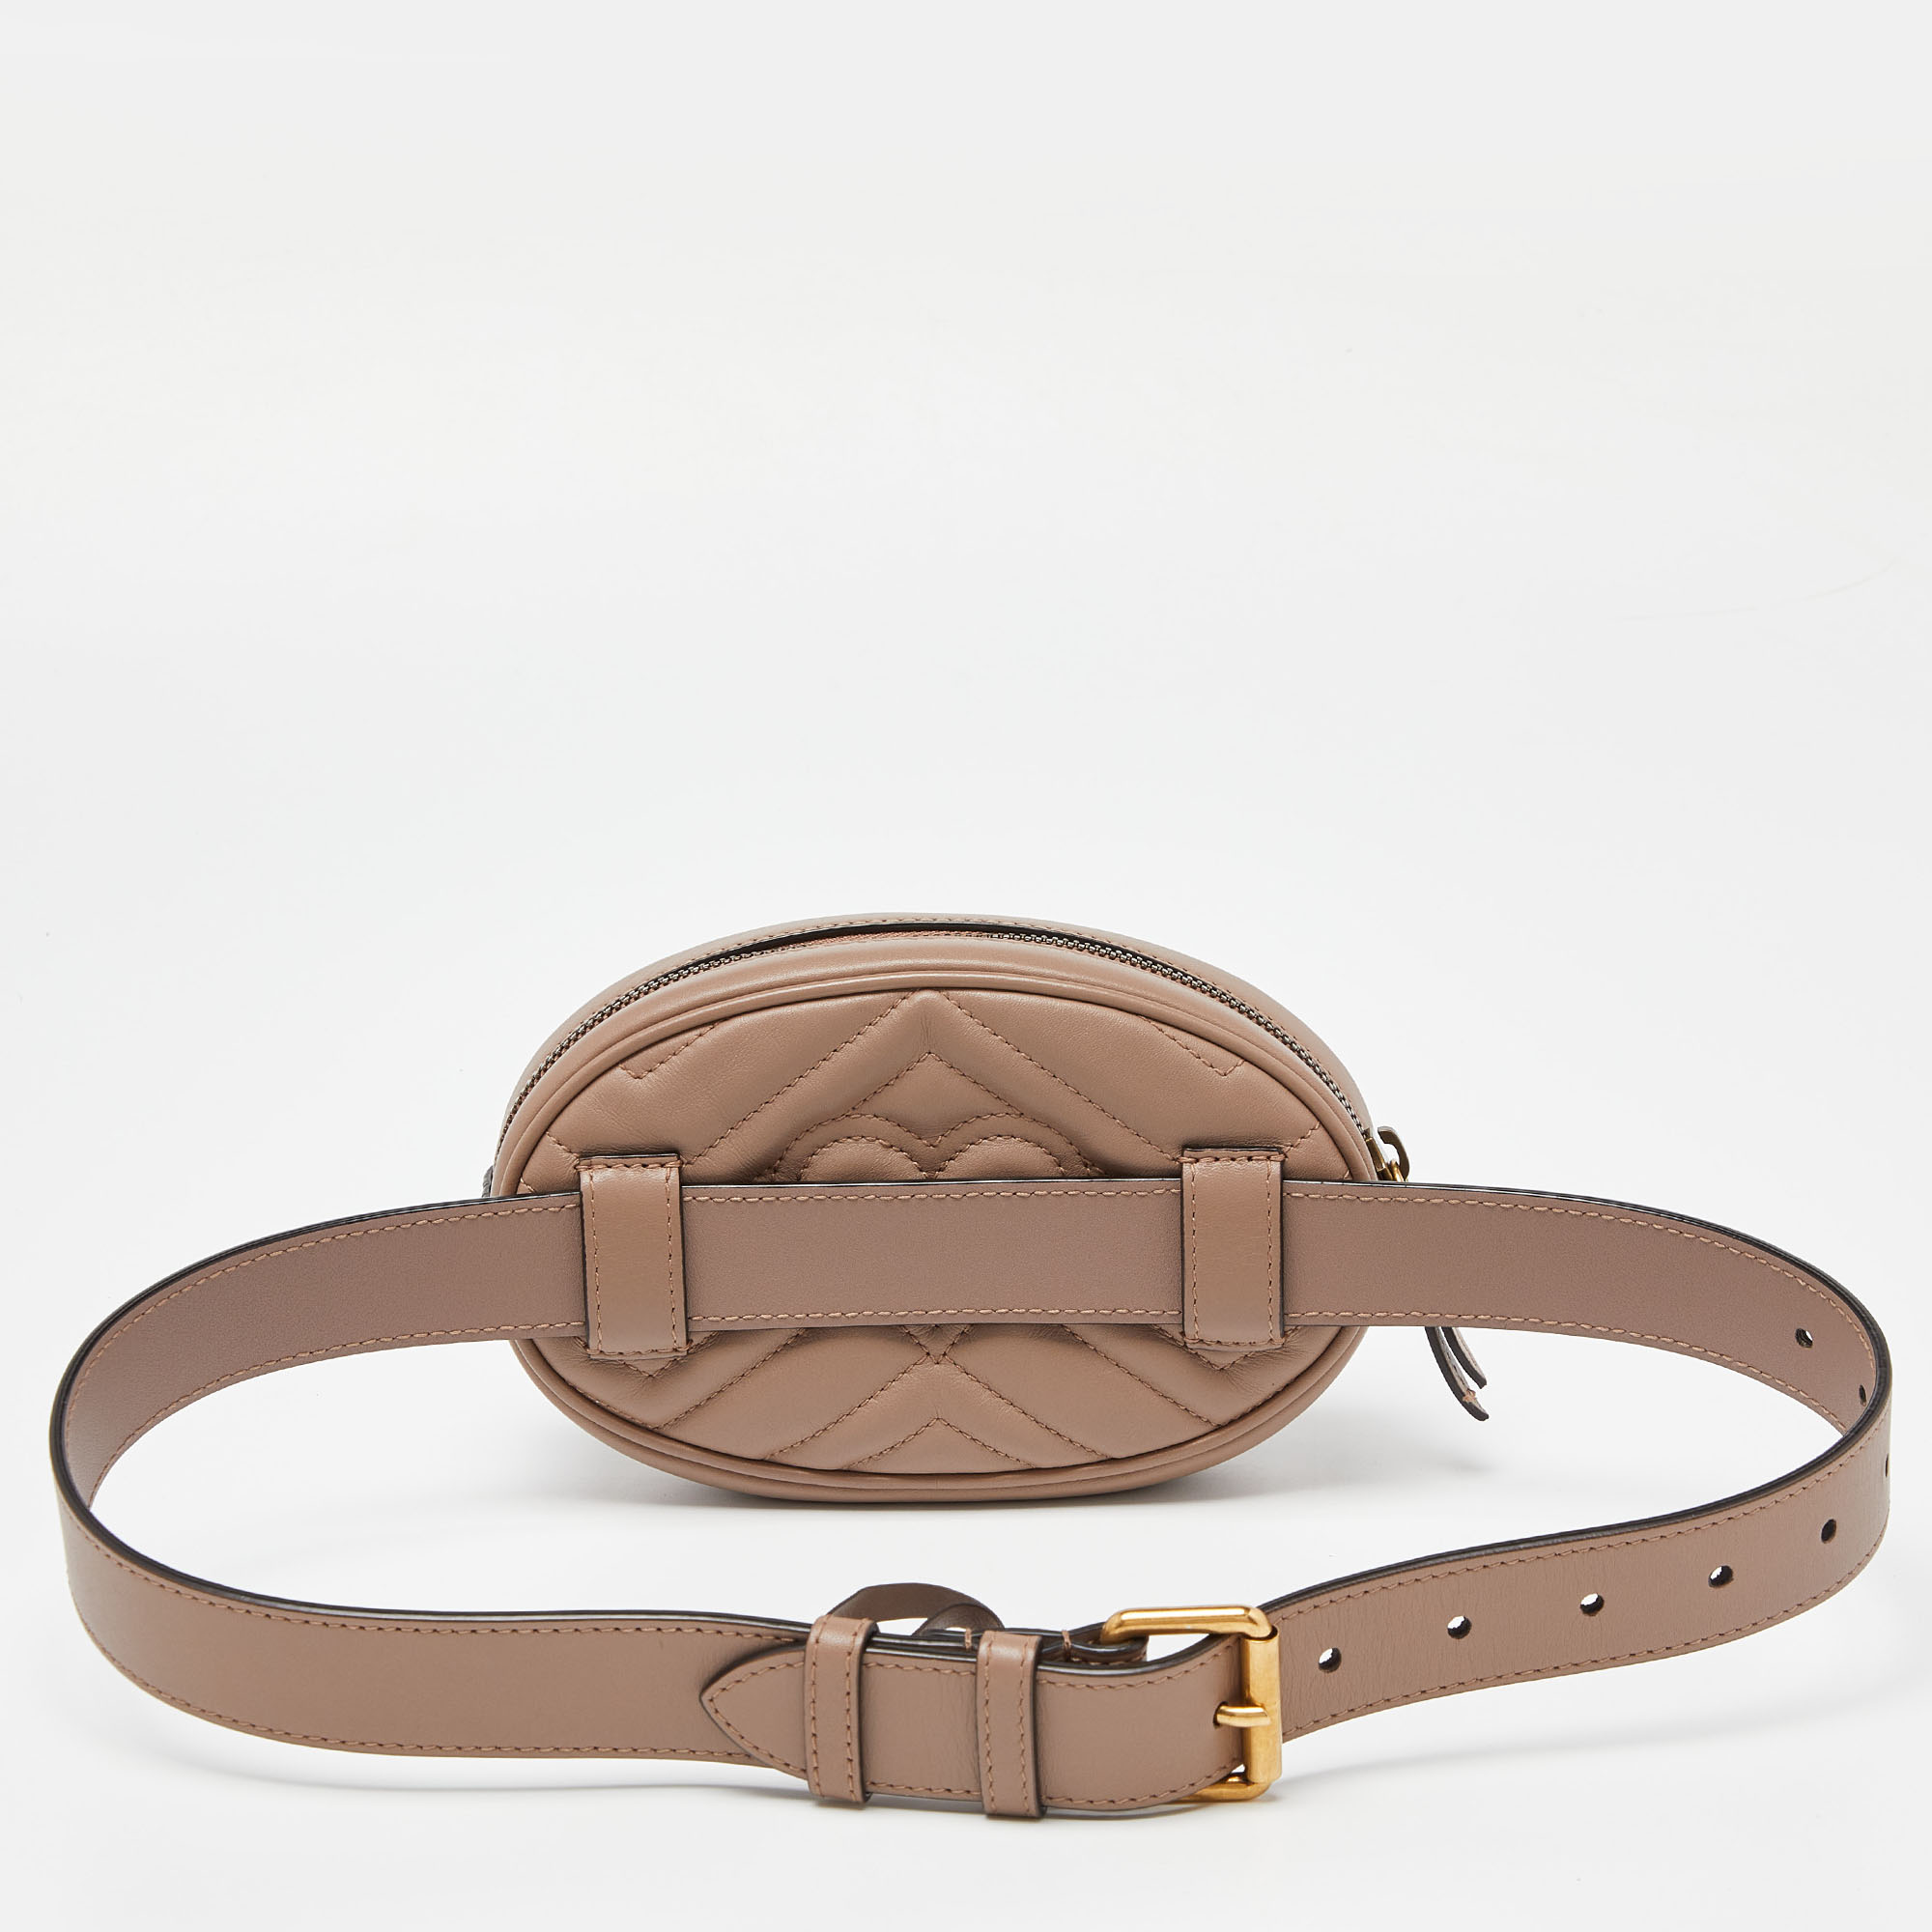 Gucci Beige Matelassé Leather Mini GG Marmont Belt Bag